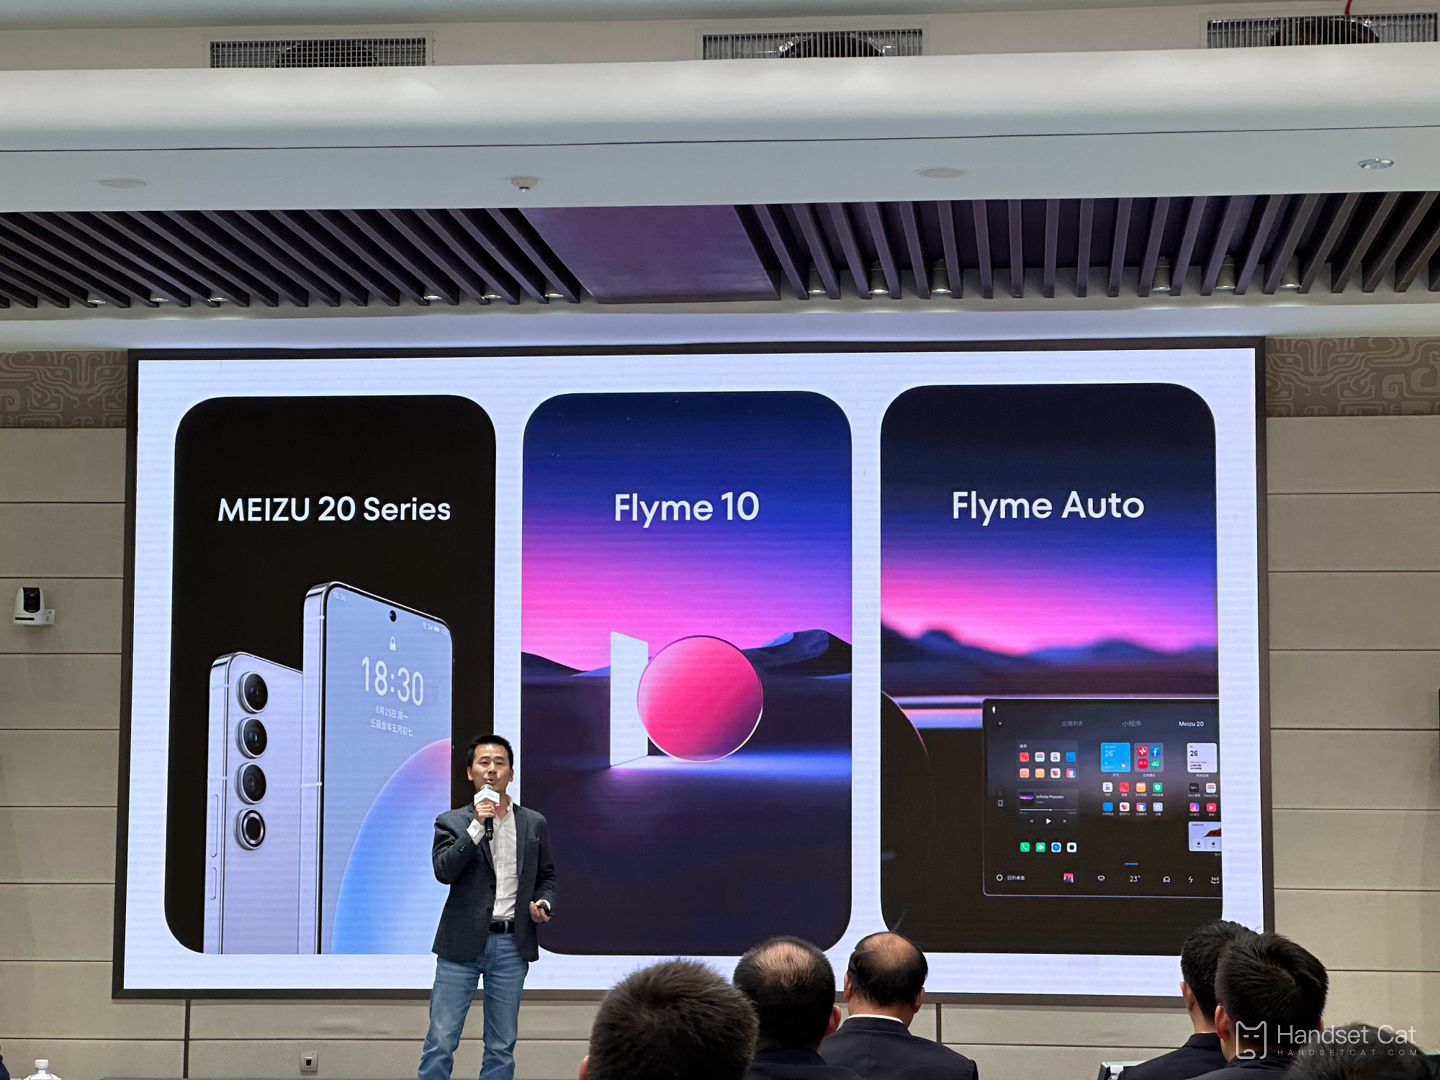 Se anuncia oficialmente que los teléfonos móviles de la serie Meizu 20 se lanzarán el 30 de marzo, junto con el nuevo sistema Flyme 10.